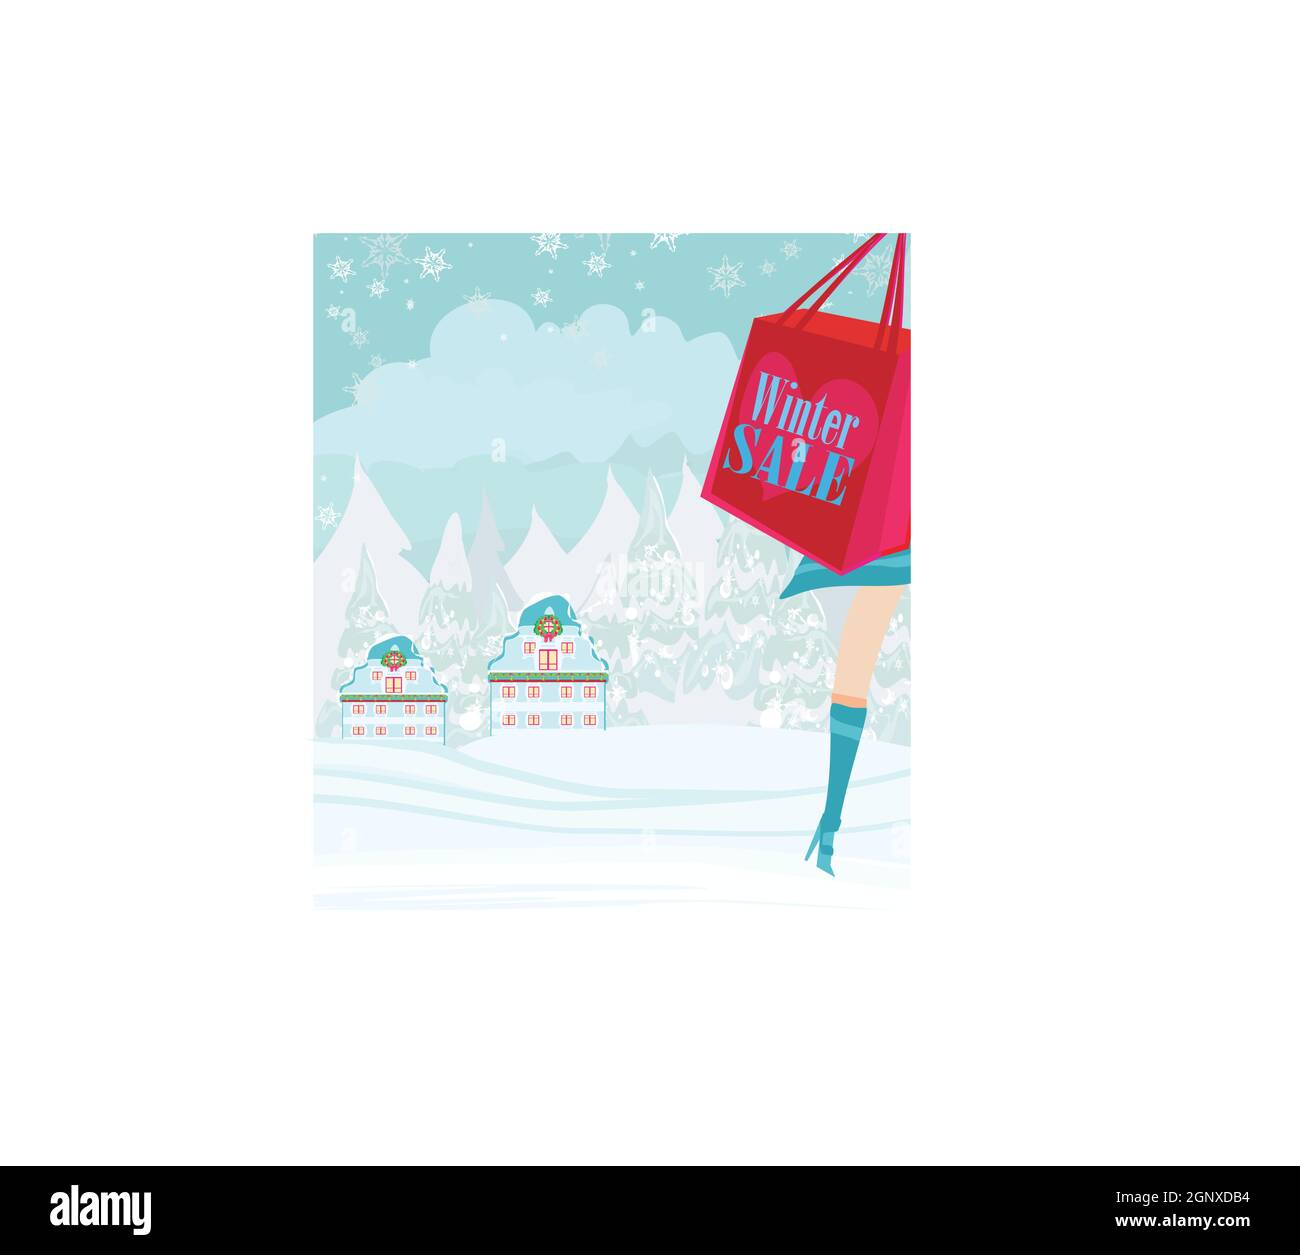 Shopping di Natale - inverno scheda di vendita Illustrazione Vettoriale